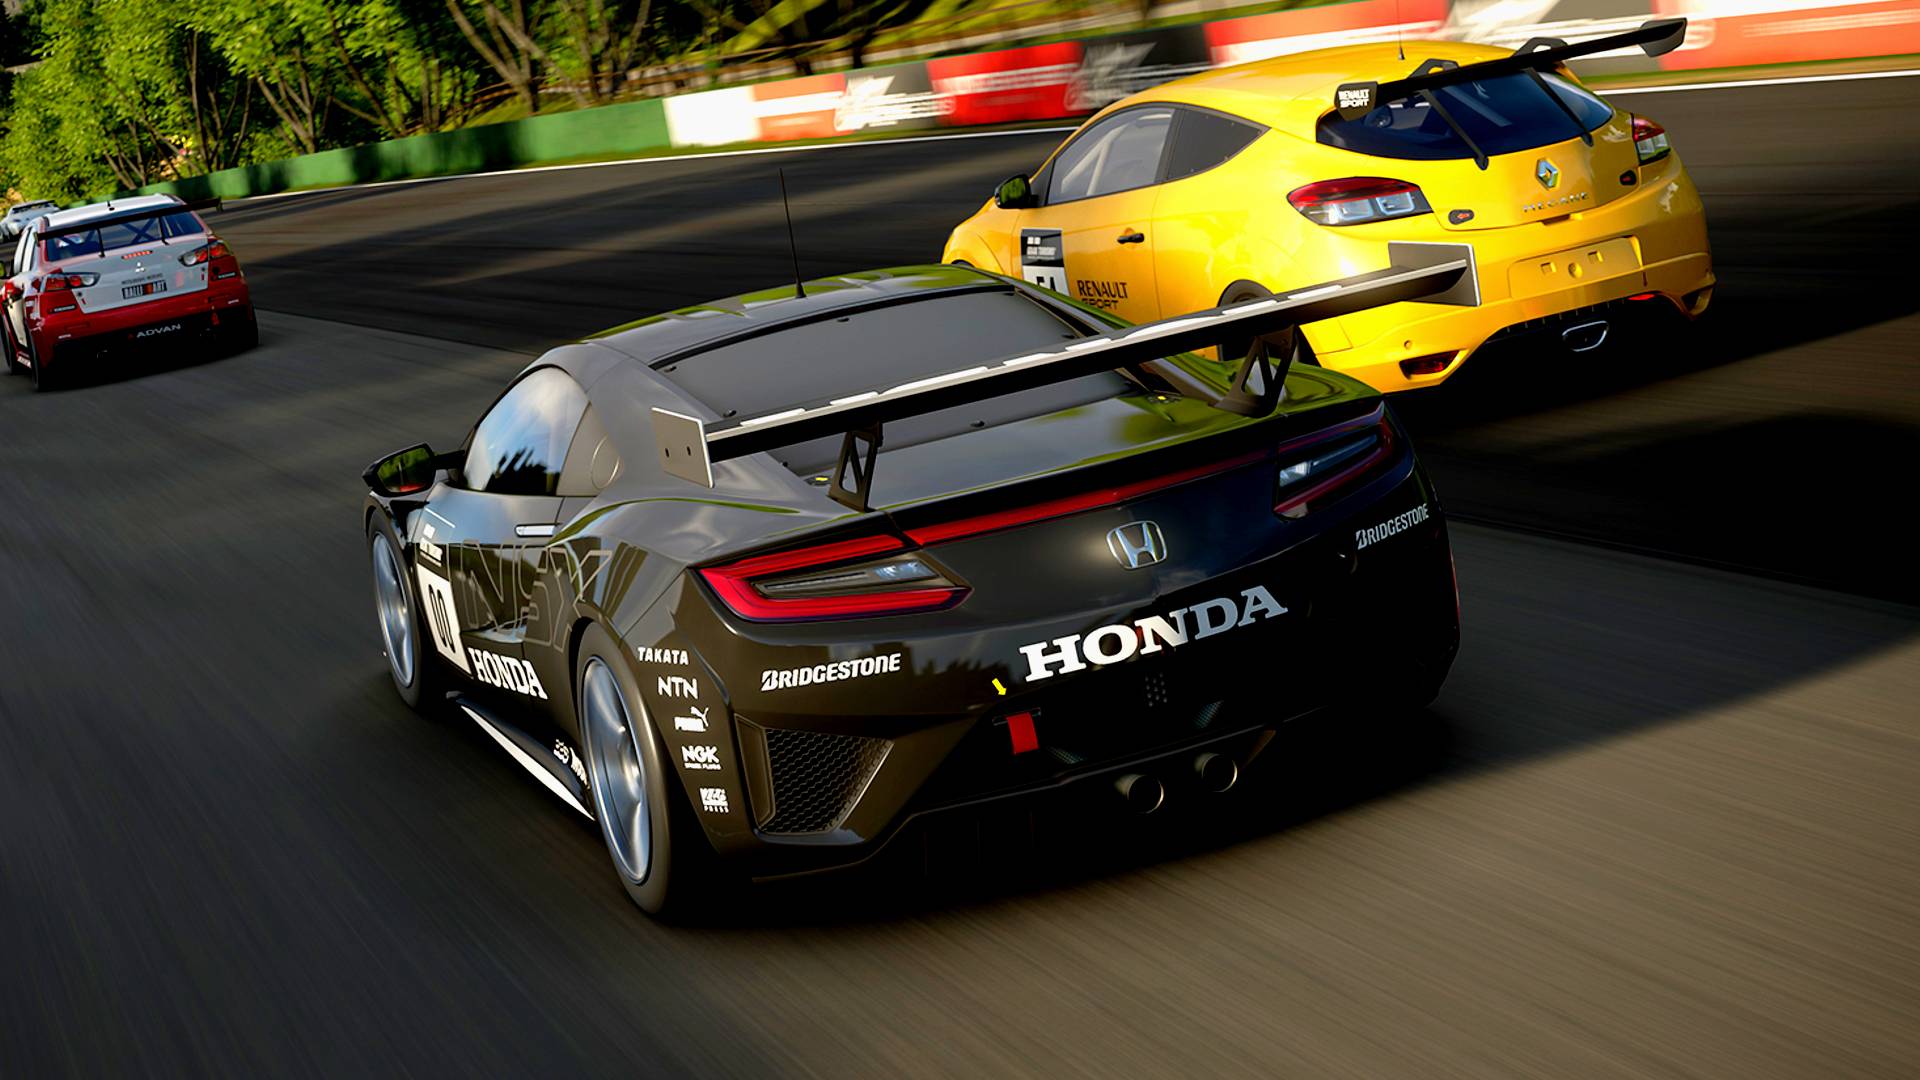 Gran Turismo 7 adds S14 Silvia, Porsche and VW concepts